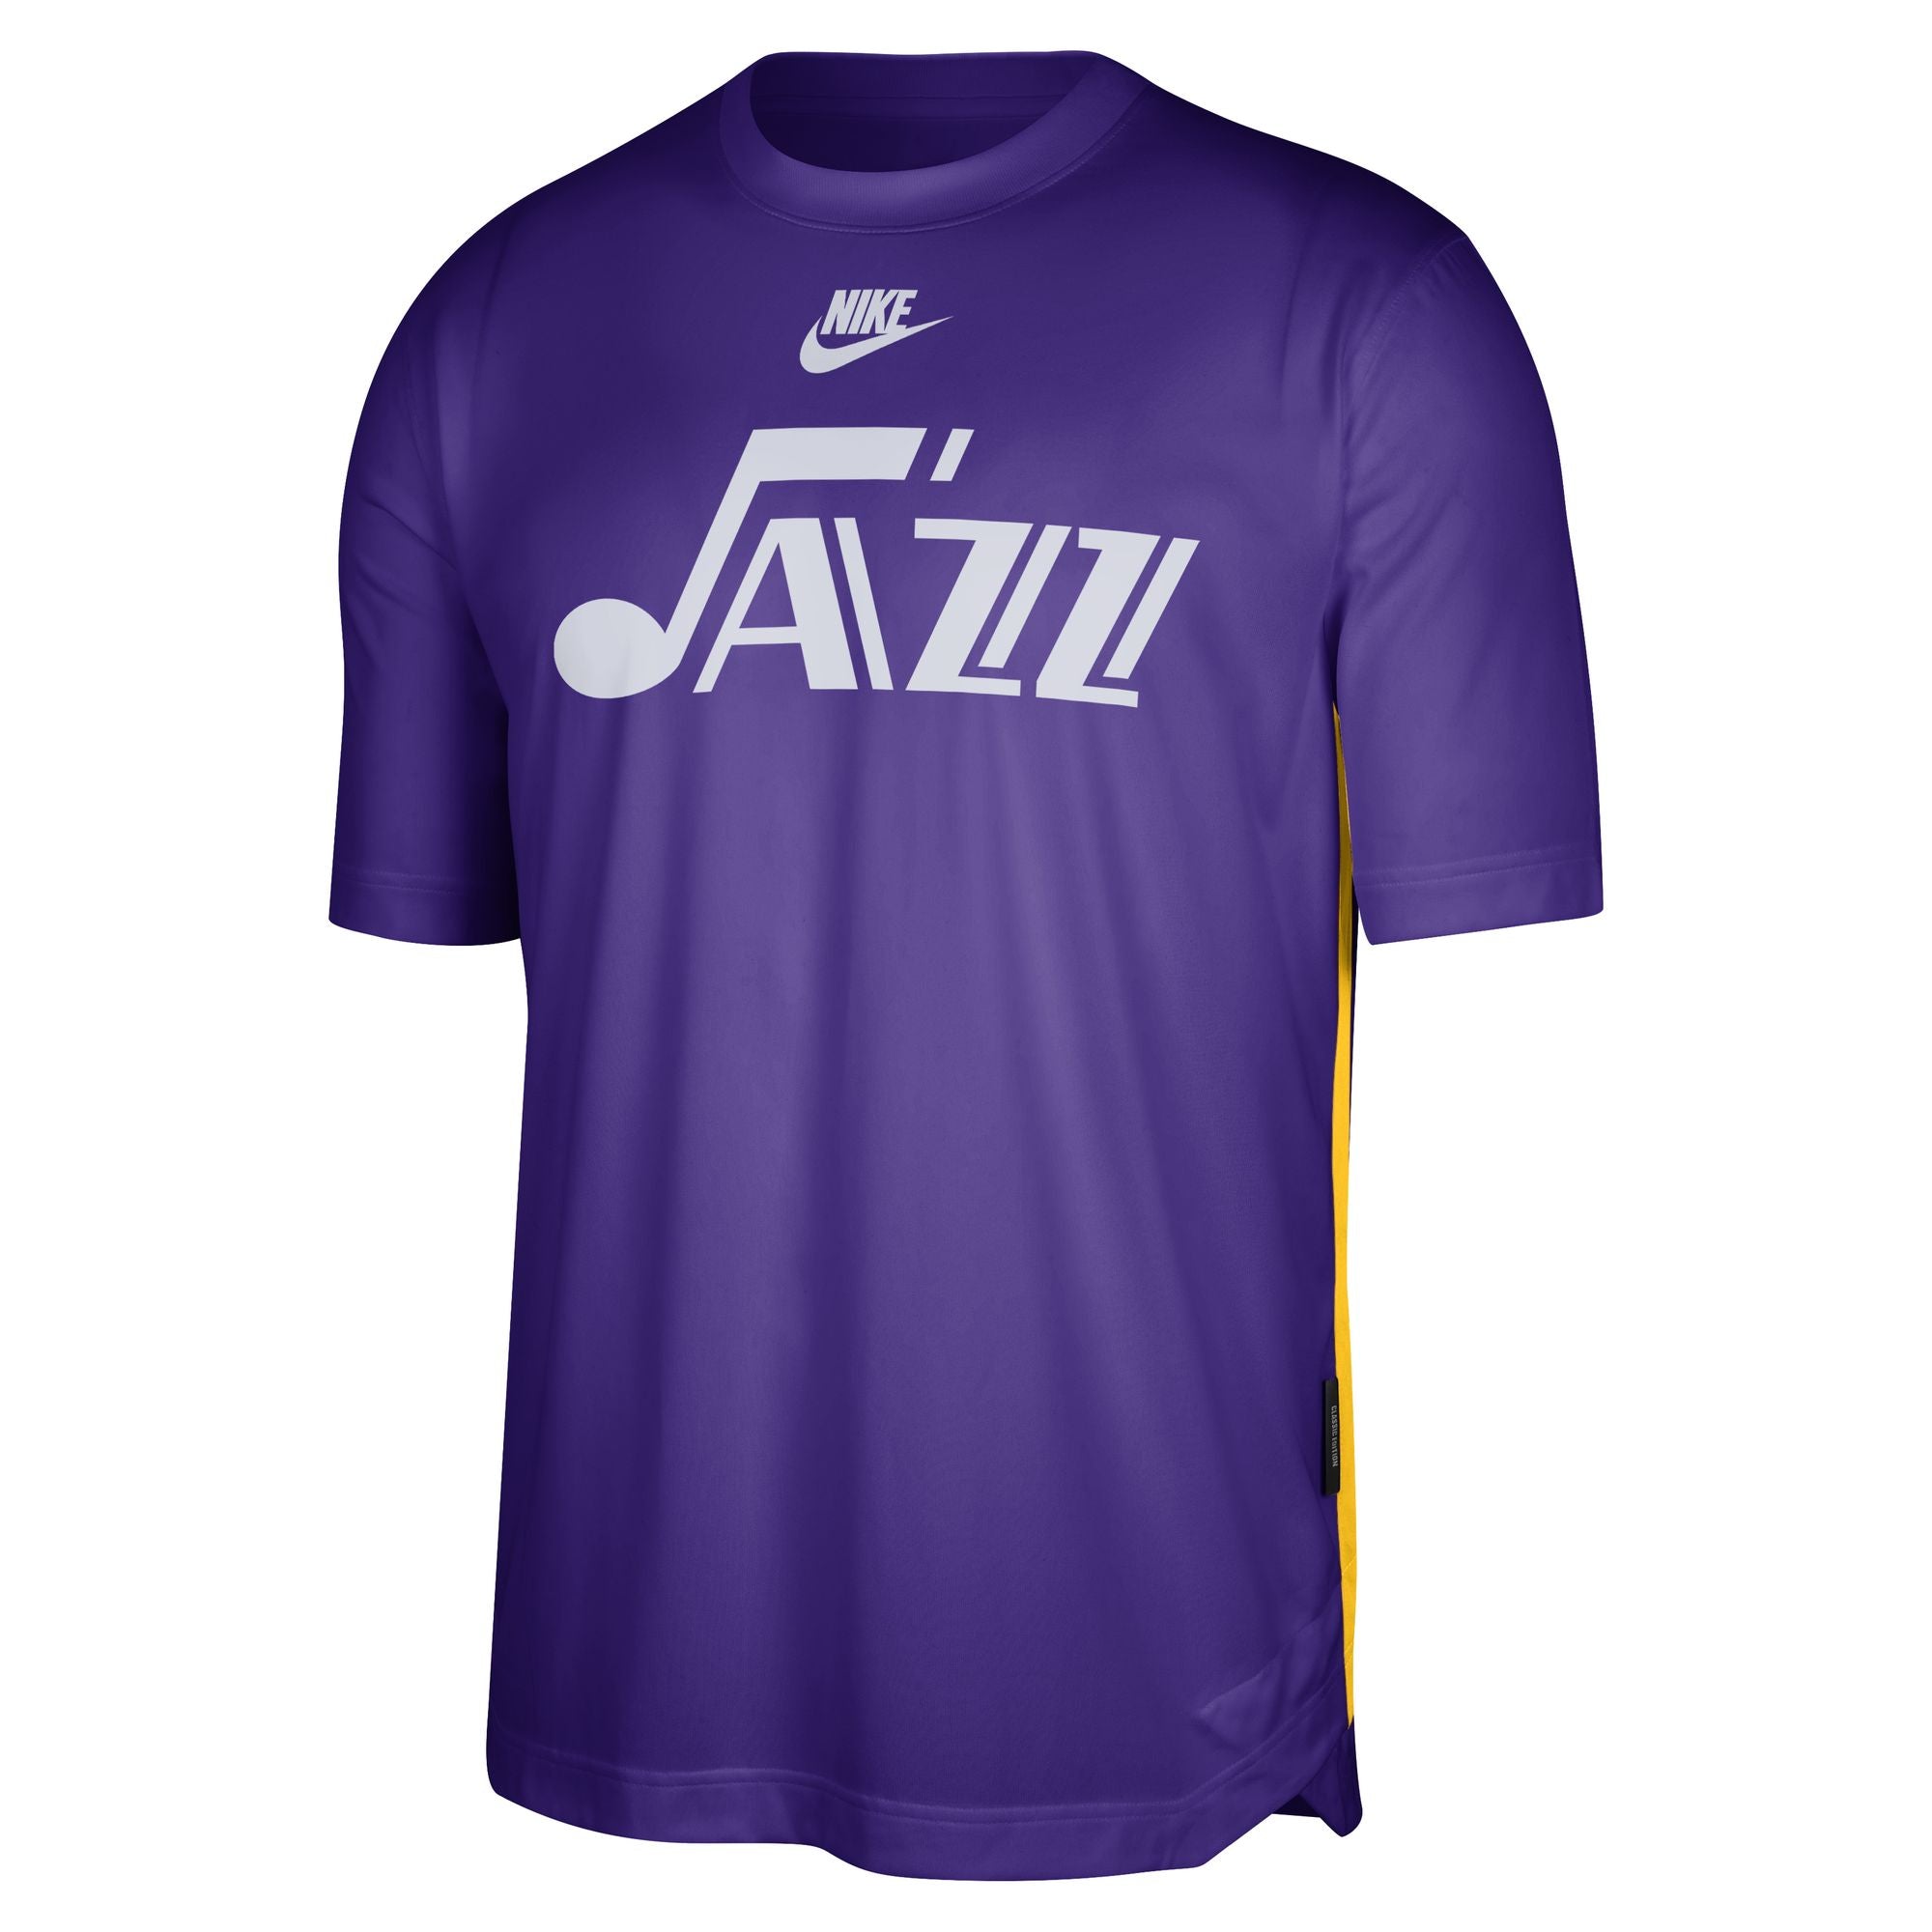 23 HWC Pre-Game Short Sleeve Top - Purple - HWC 70s - Nike – Utah Jazz ...